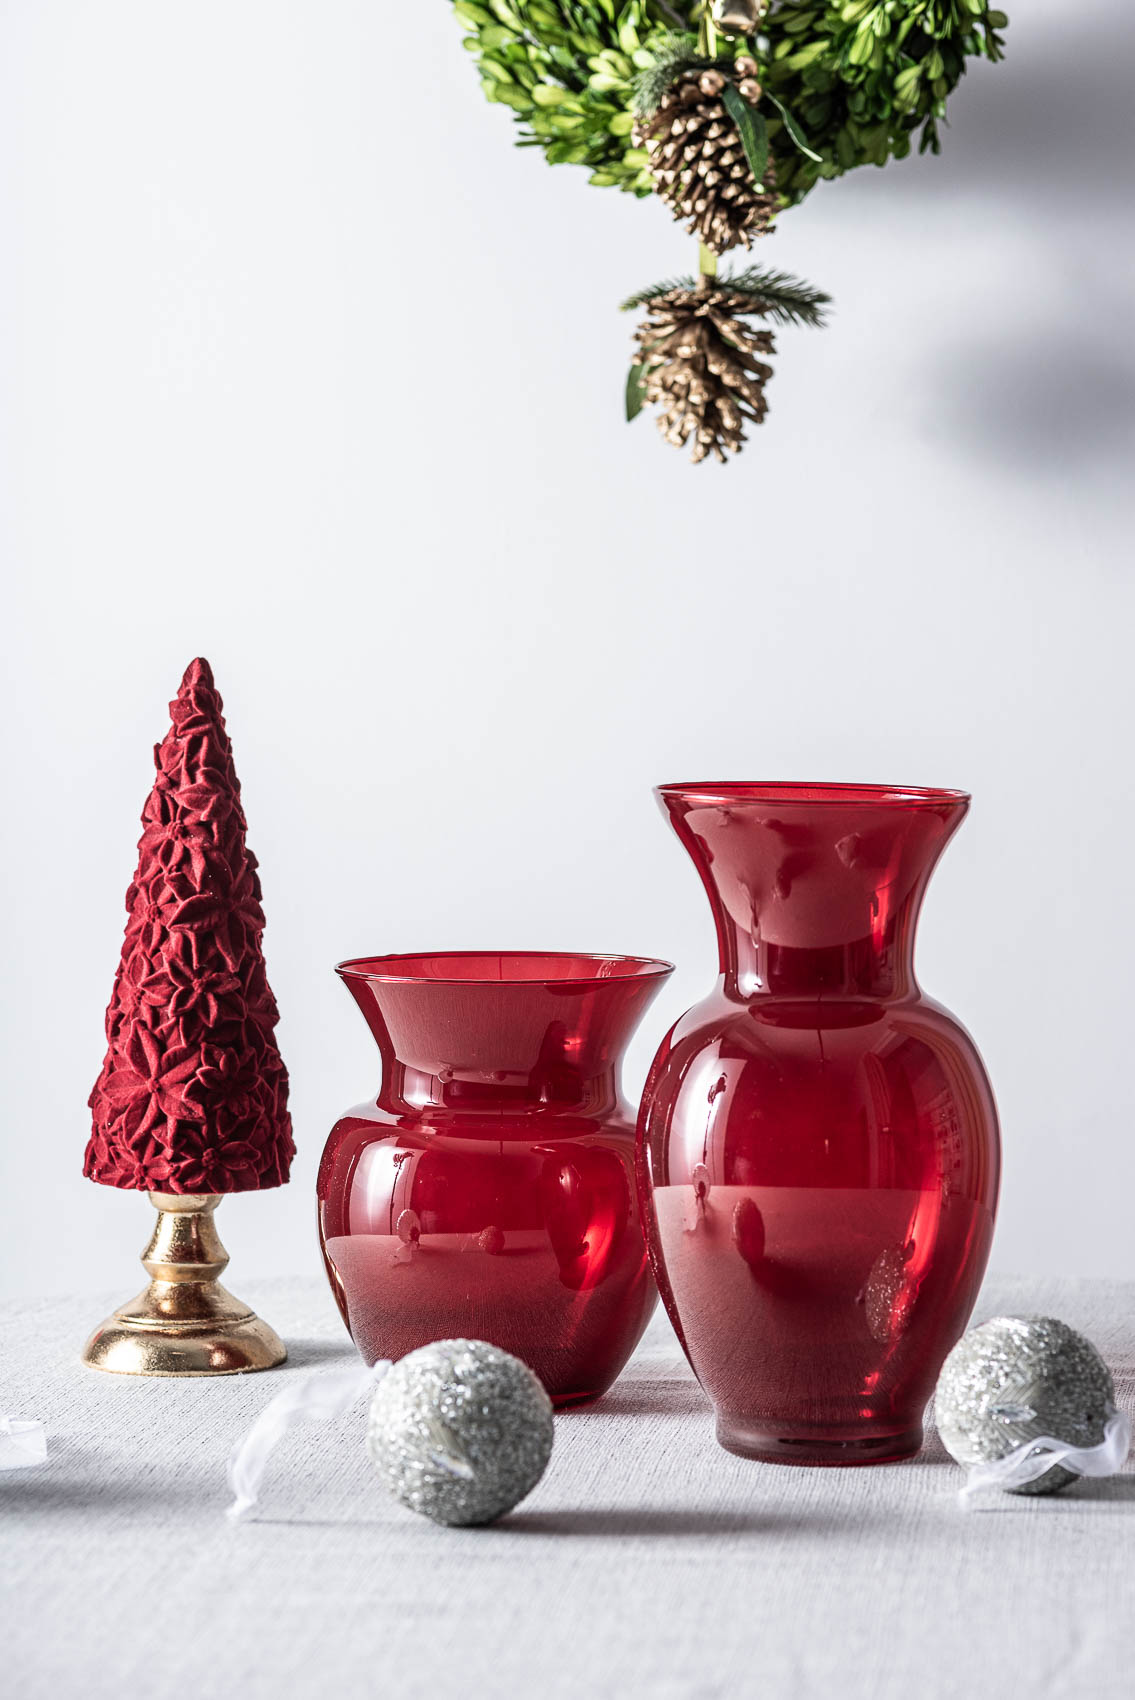 wazony szklane bordowe w świątecznej aranżacji - wyszukane dekoracje na boże narodzenie